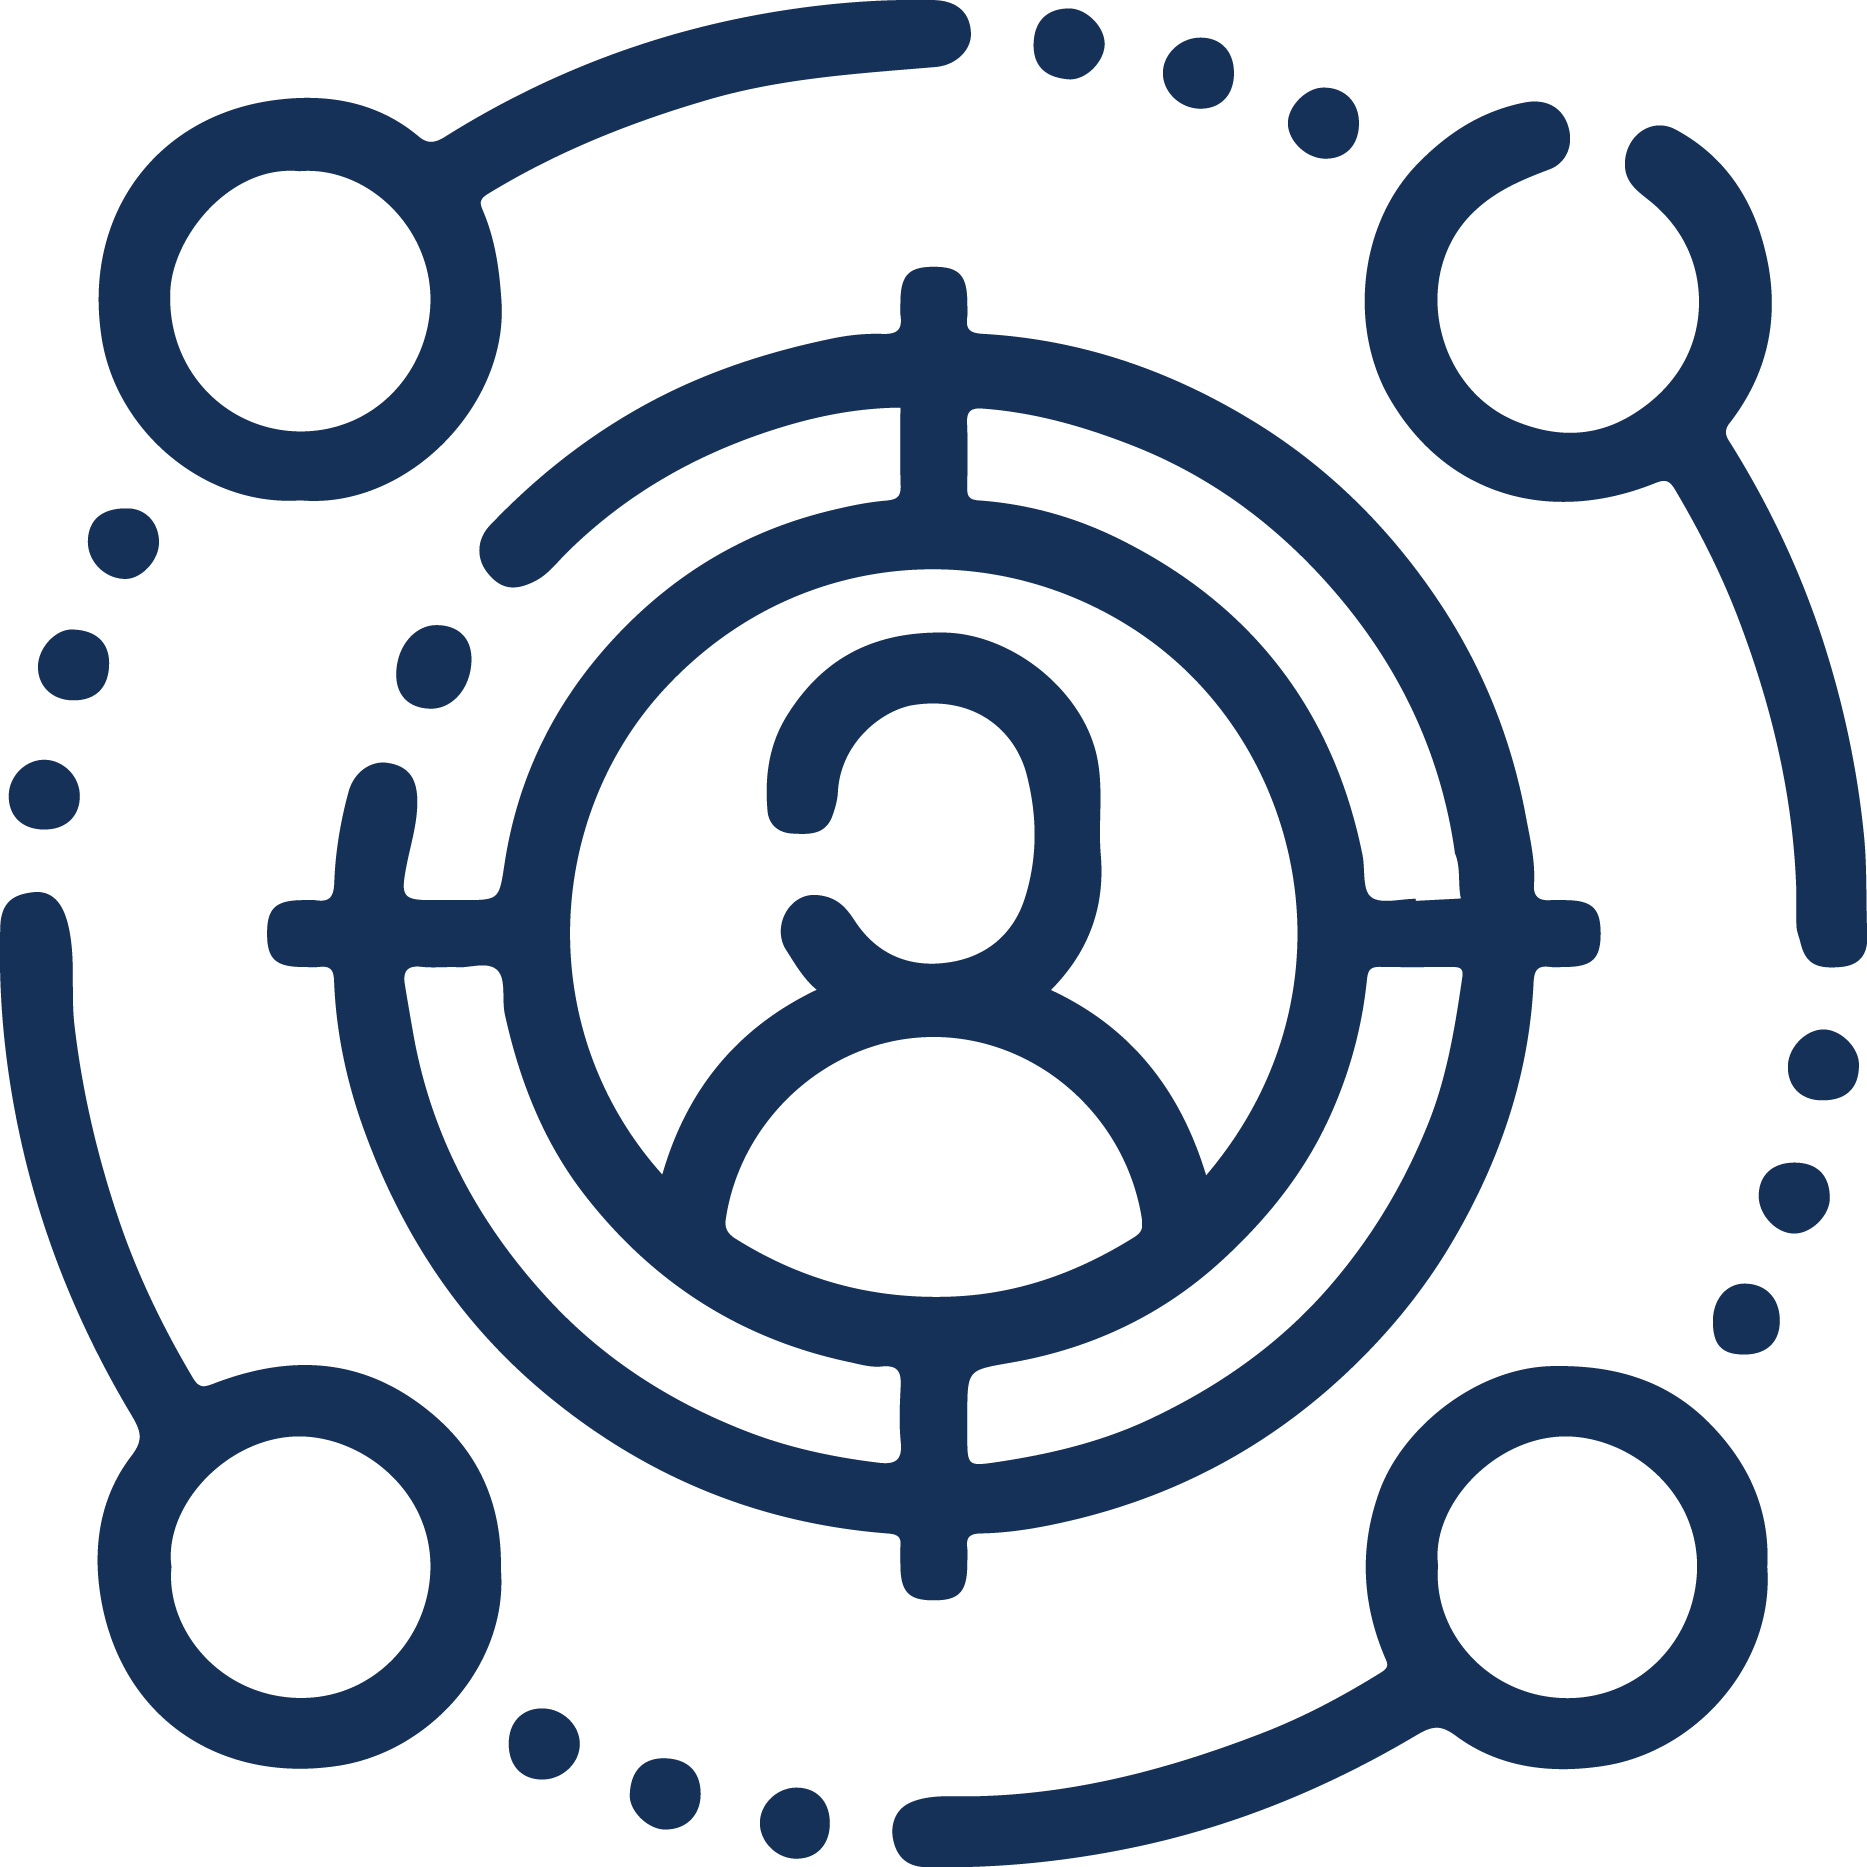 Occupancy Monitoring Logo